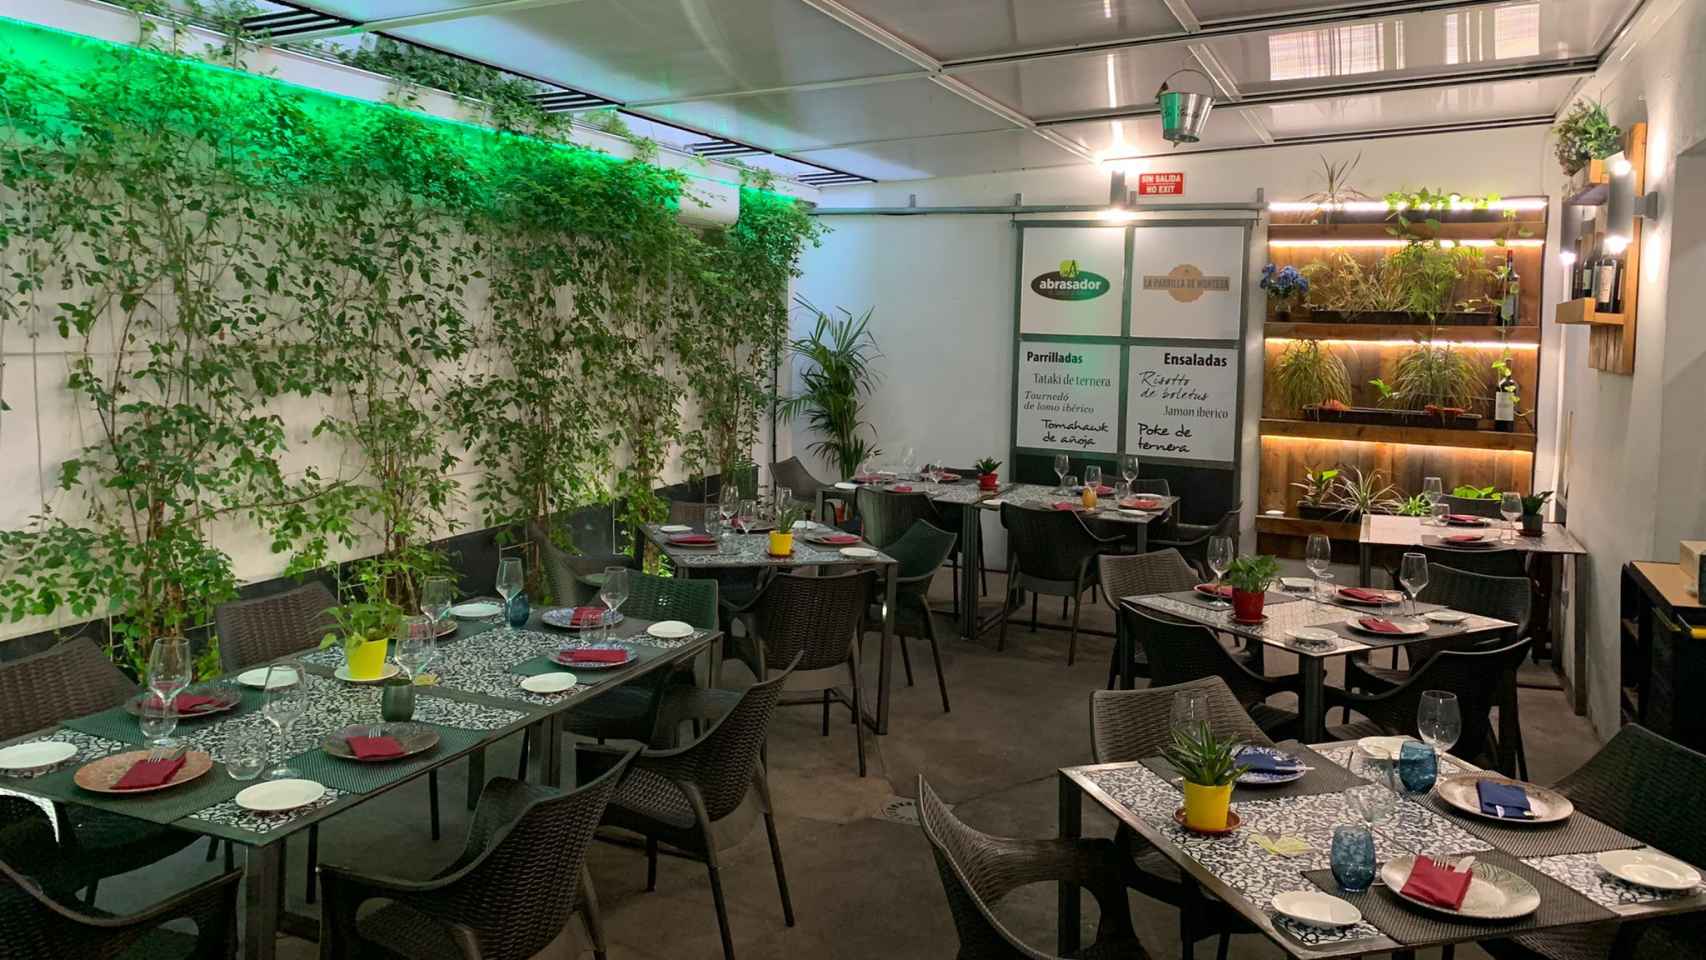 La Parrilla de Montesa se inaugura como restaurante Abrasador en Ciudad Real